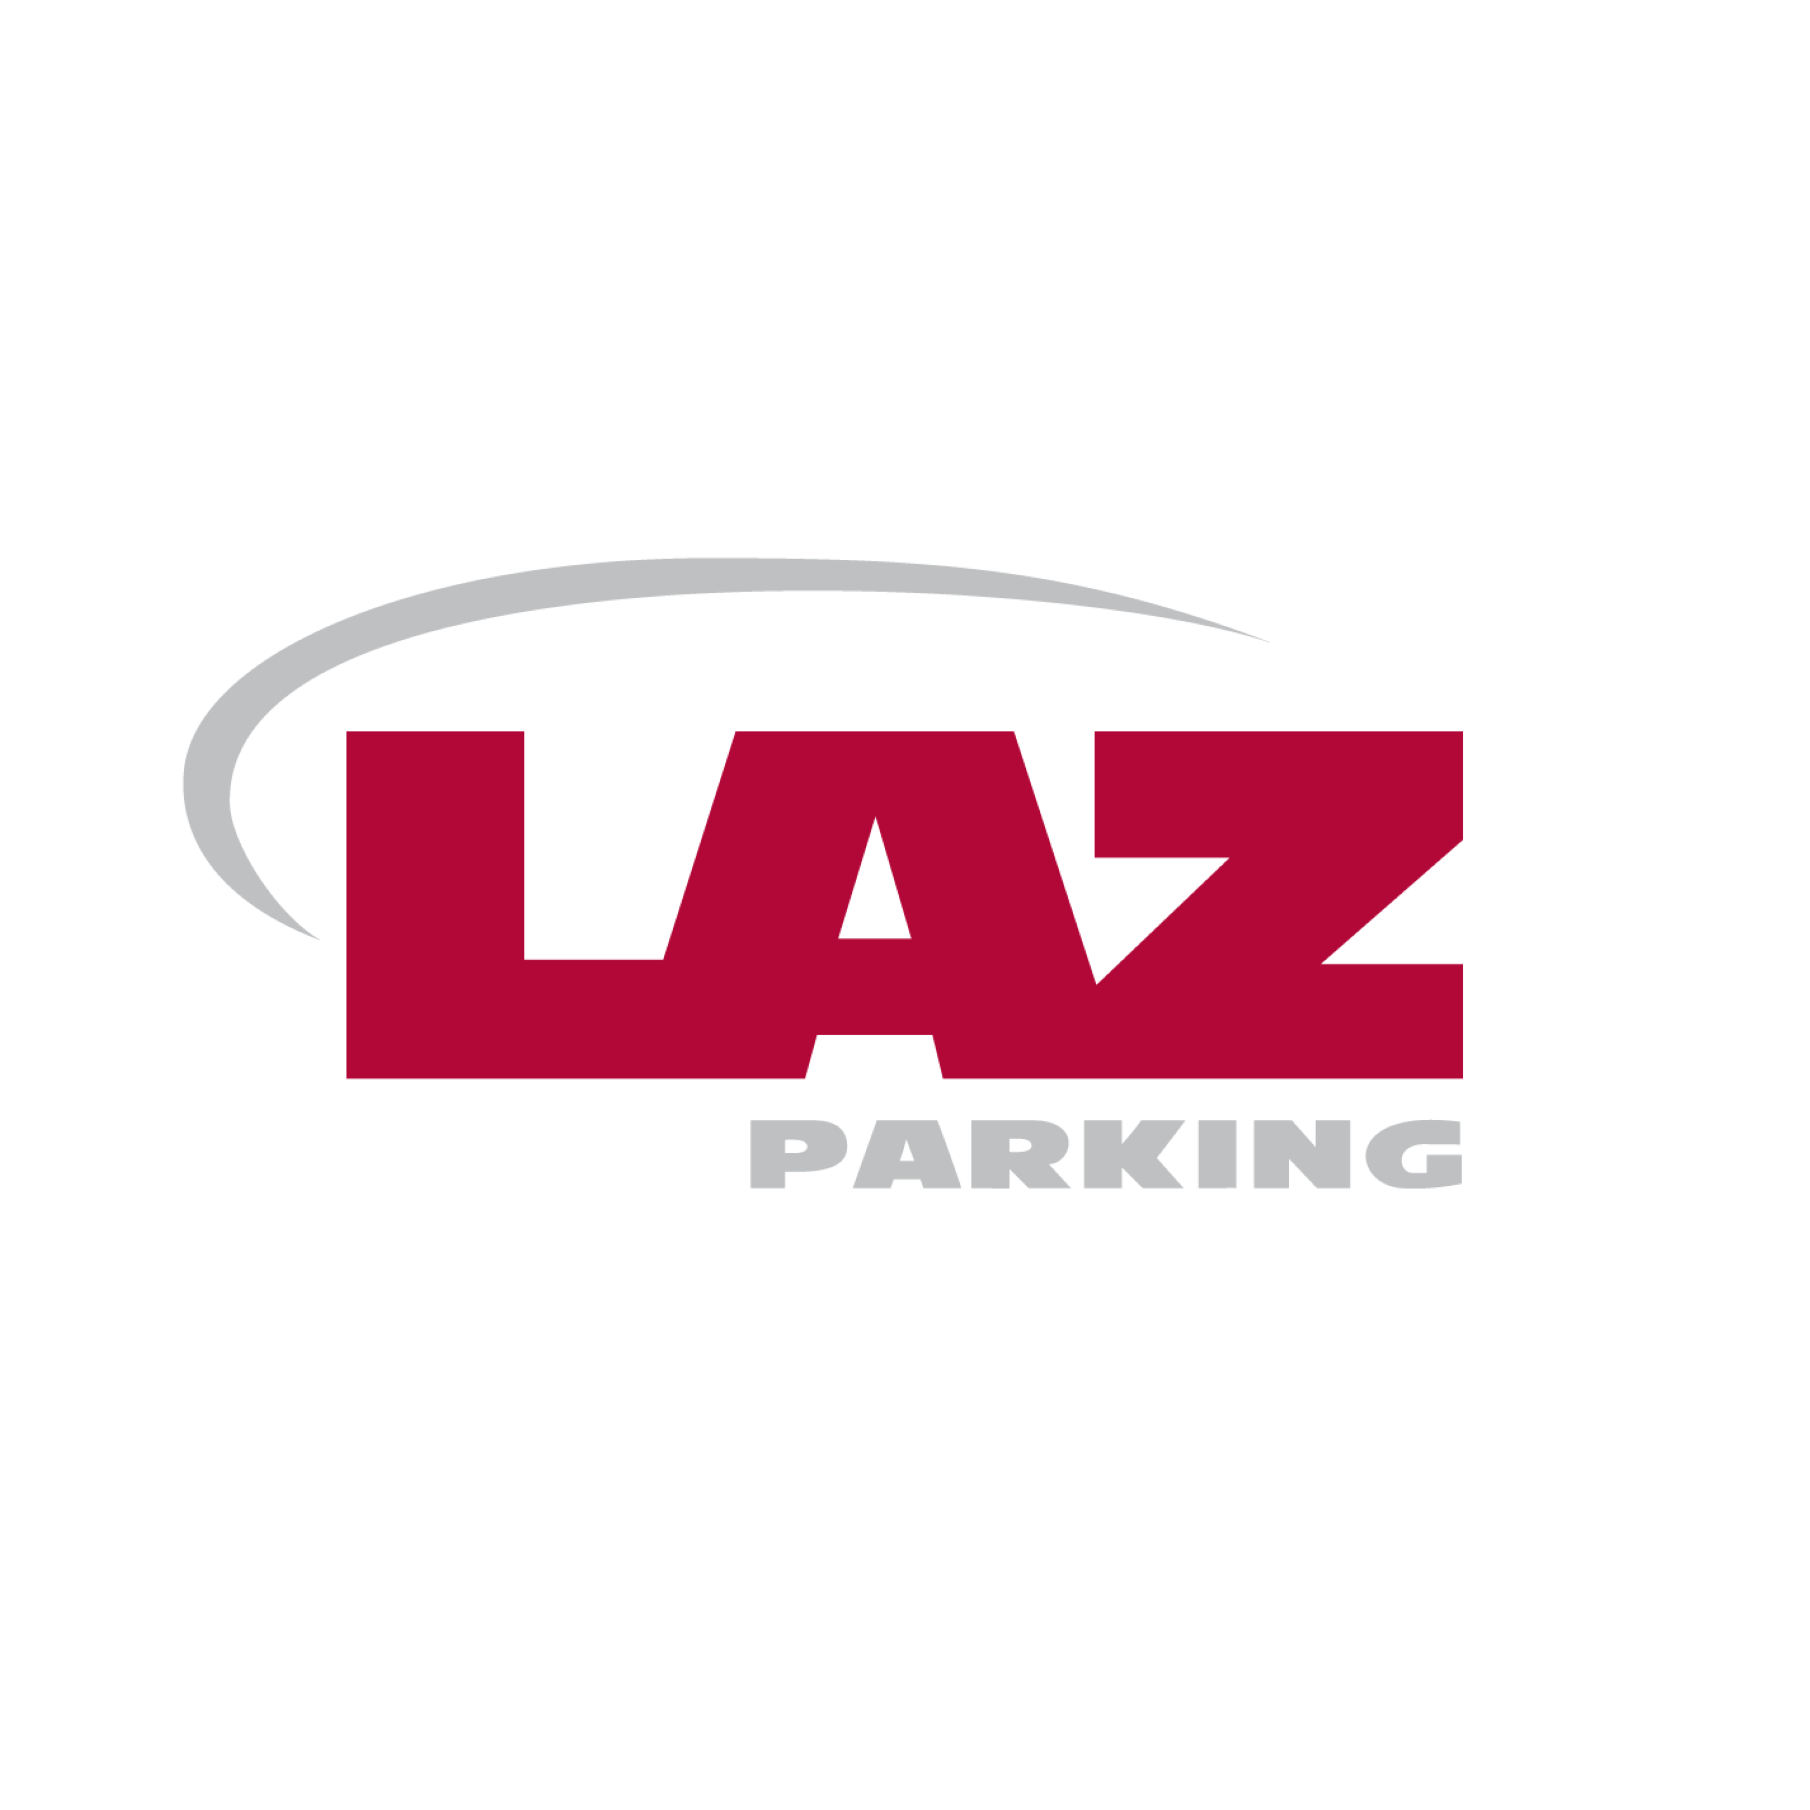 LAZ Parking - Chicago, IL 60605 - (224)343-2546 | ShowMeLocal.com